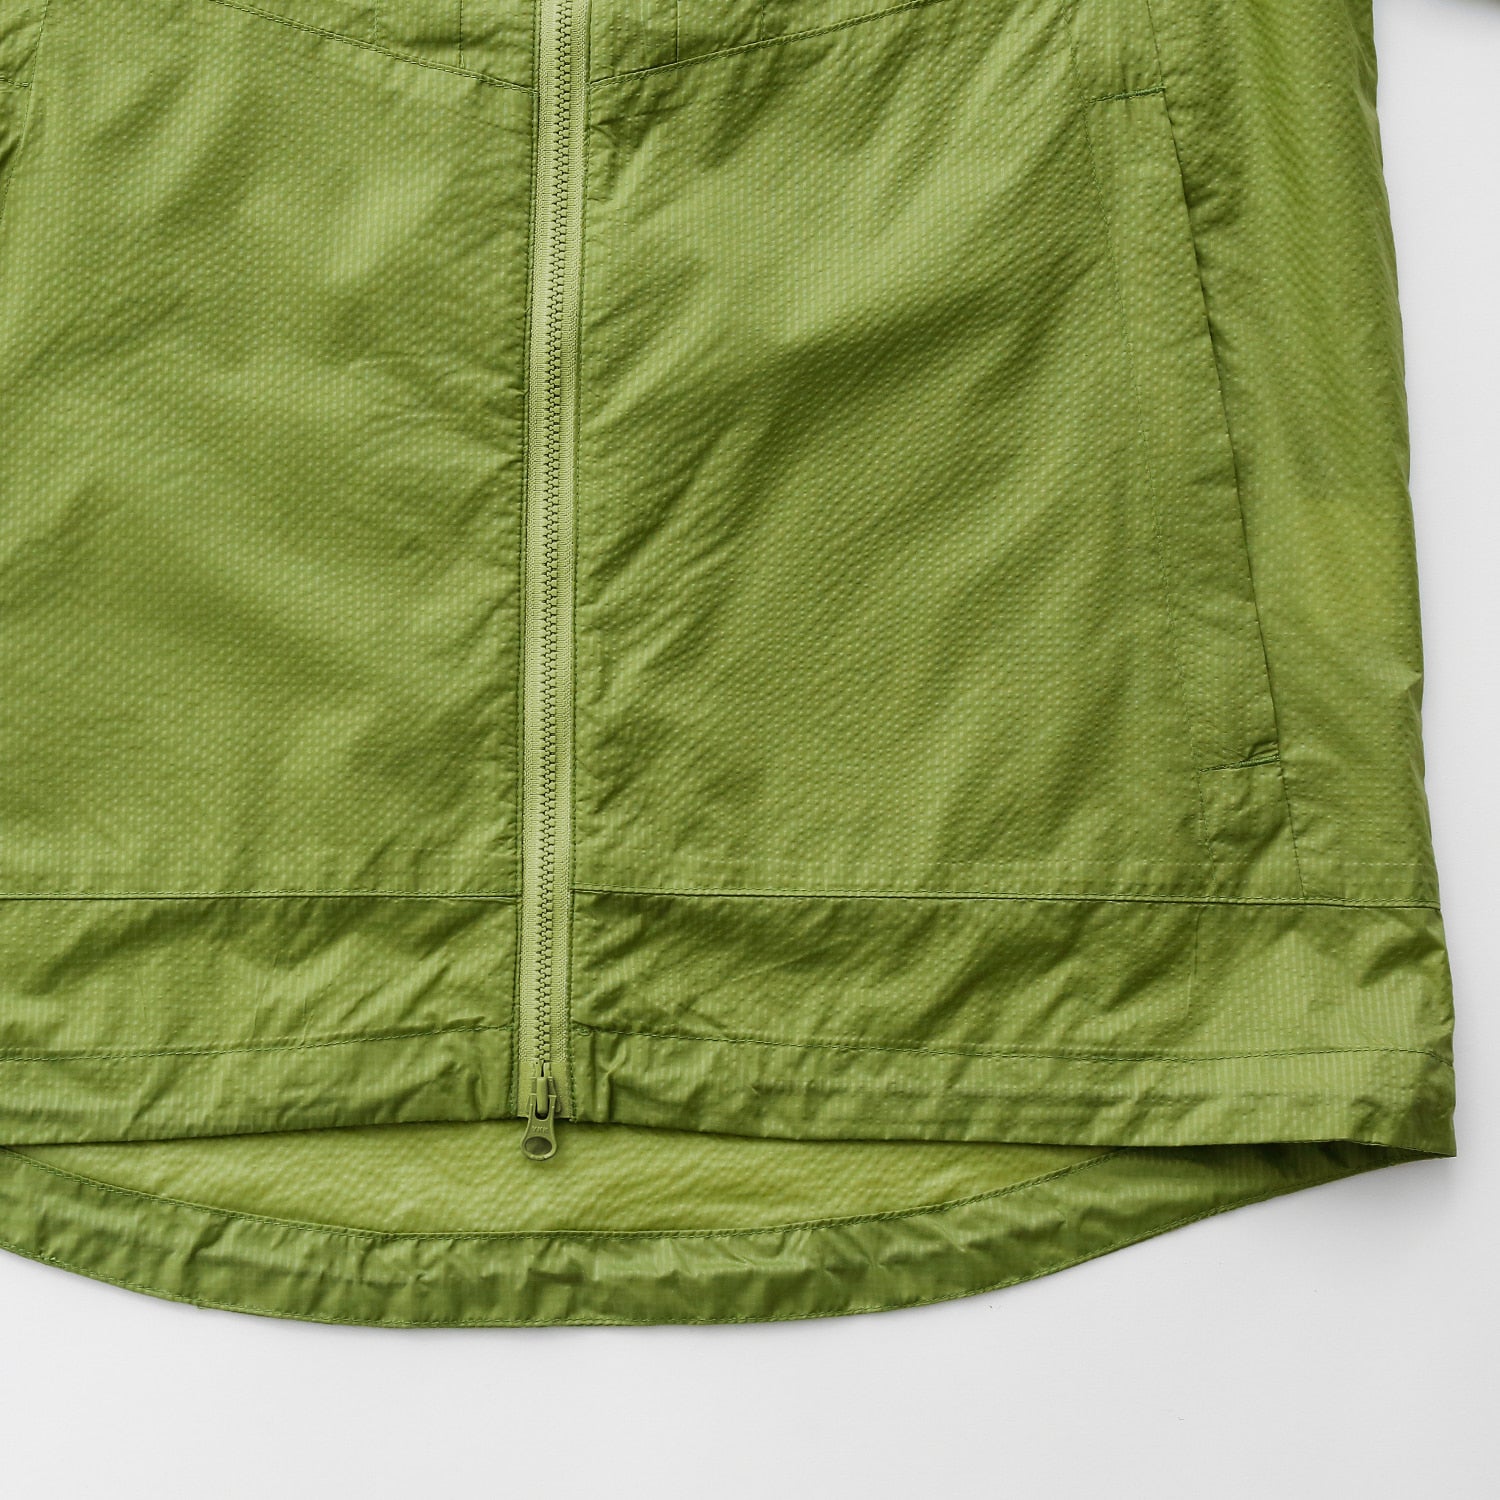 Cayl - Ripstop Nylon Jacket (Green)